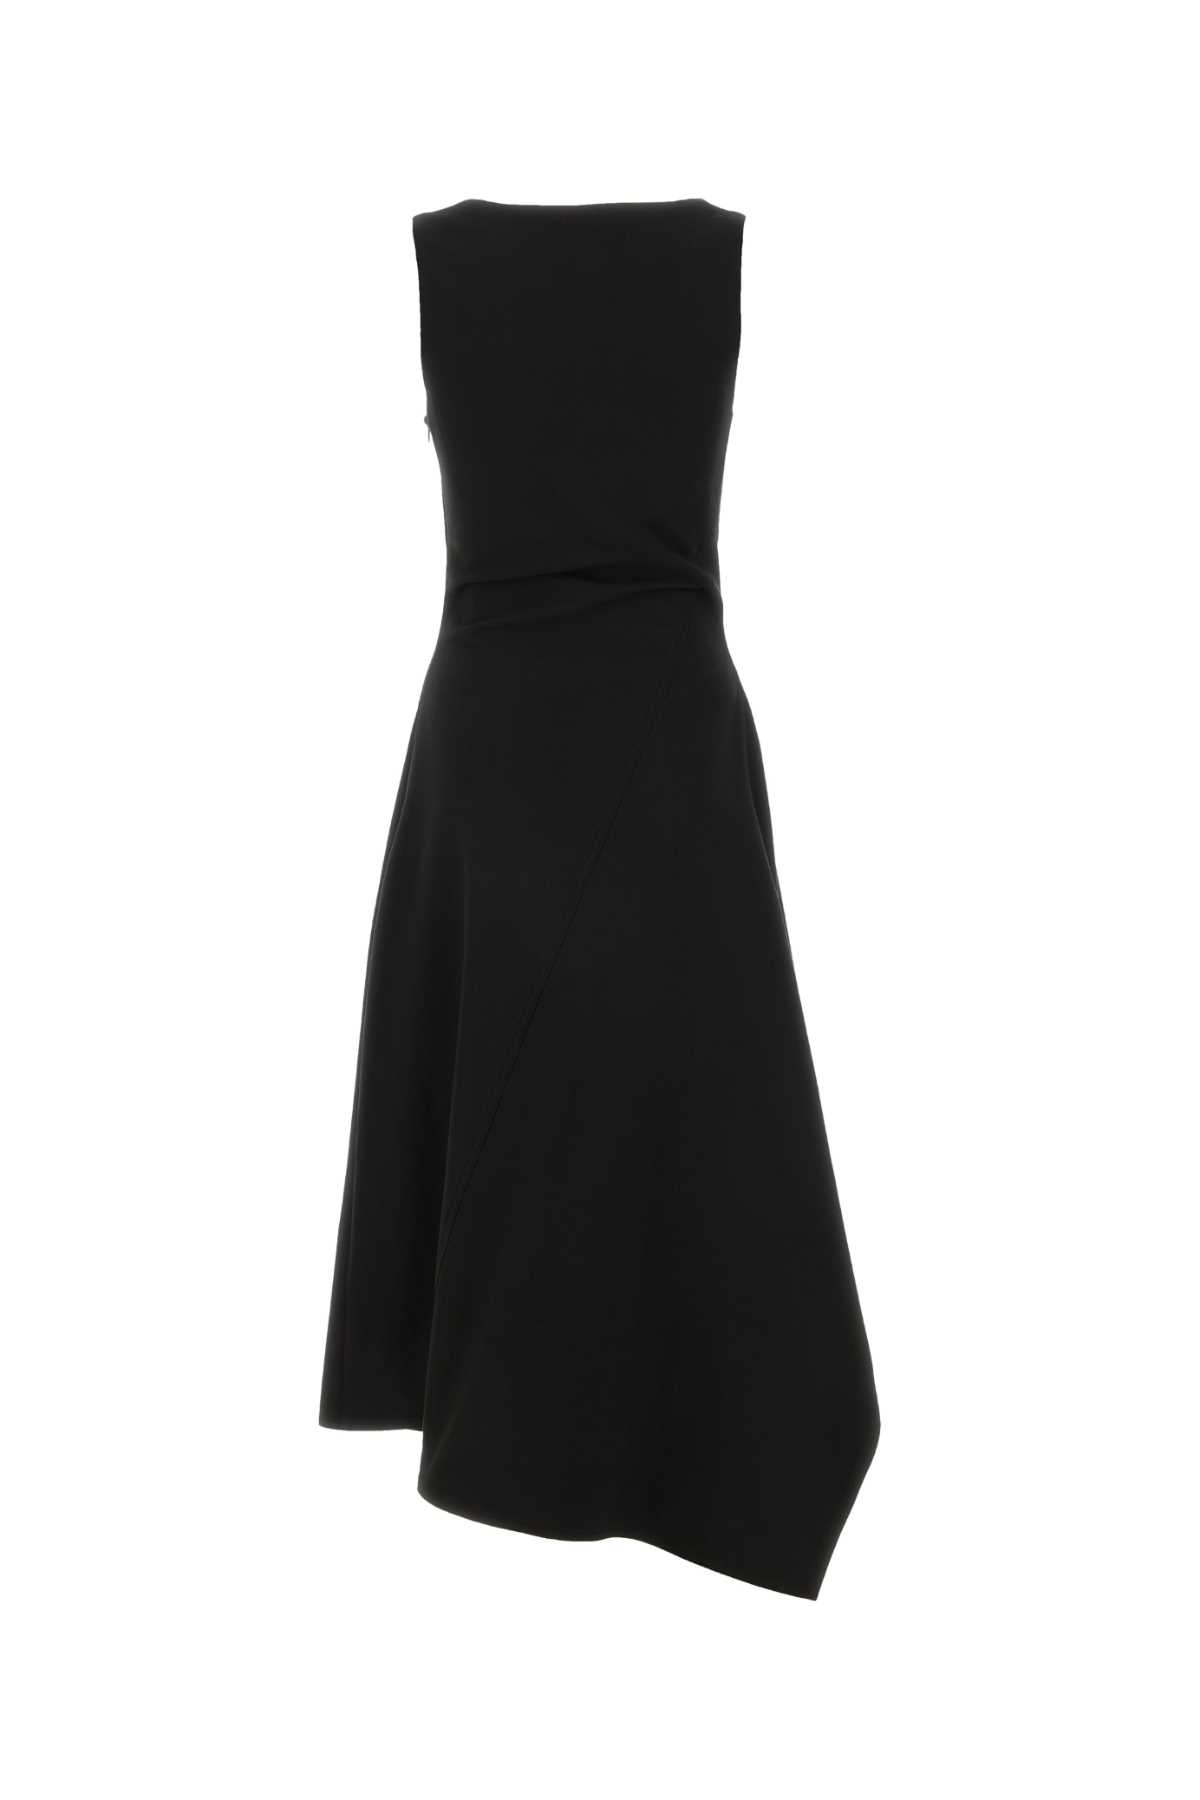 Bottega Veneta Black Stretch Cotton Dress